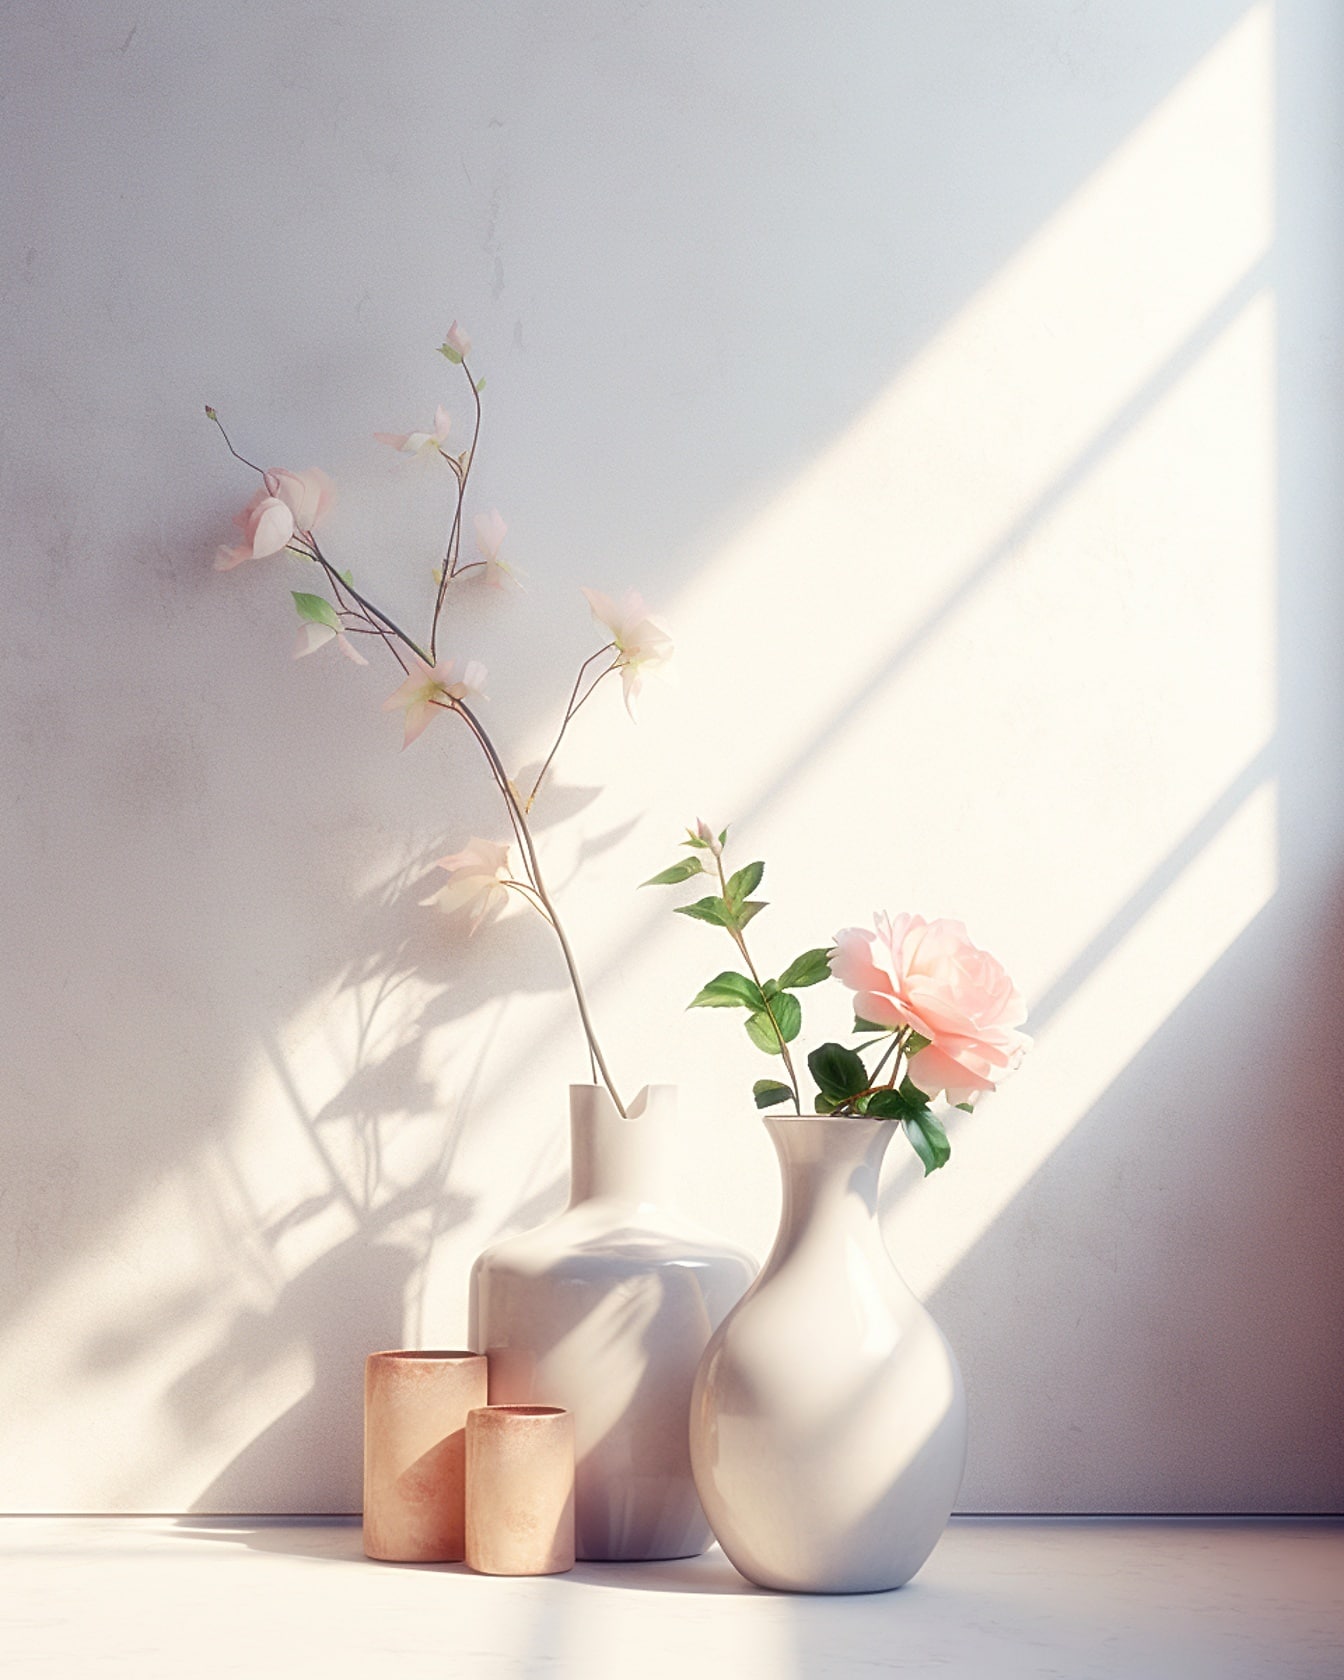 Două vaze albe din porțelan cu flori albe de trandafir în ea pe o masă la lumină moale